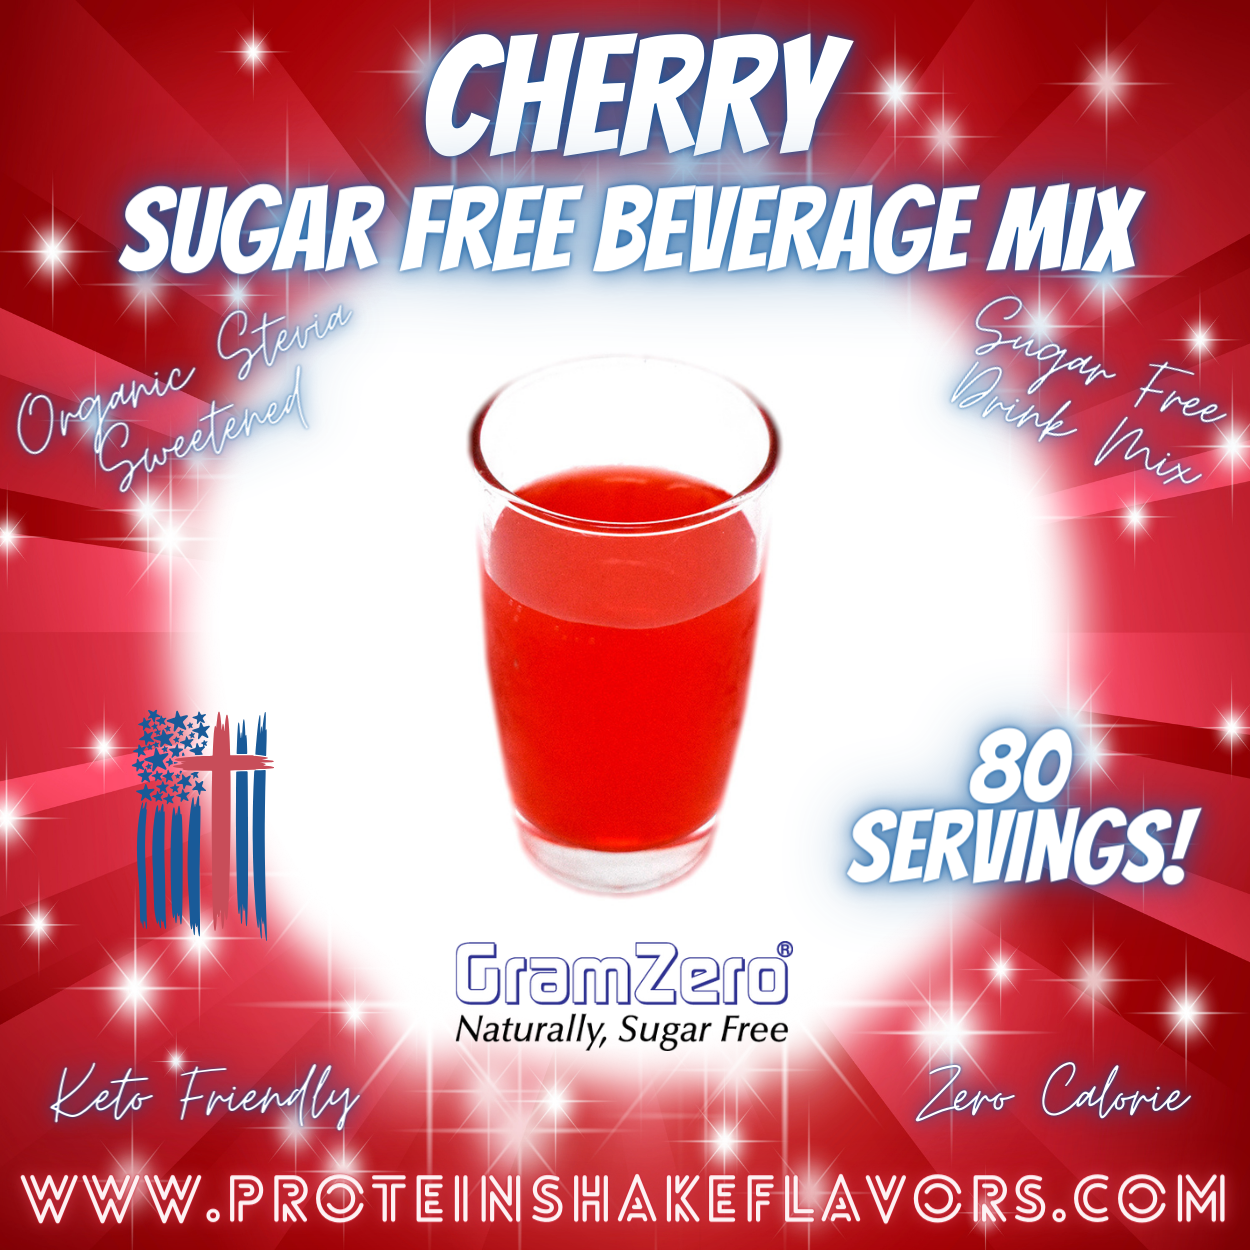 Sugar Free Drink Mix: CHERRY 🍒 Zero Calorie Beverage